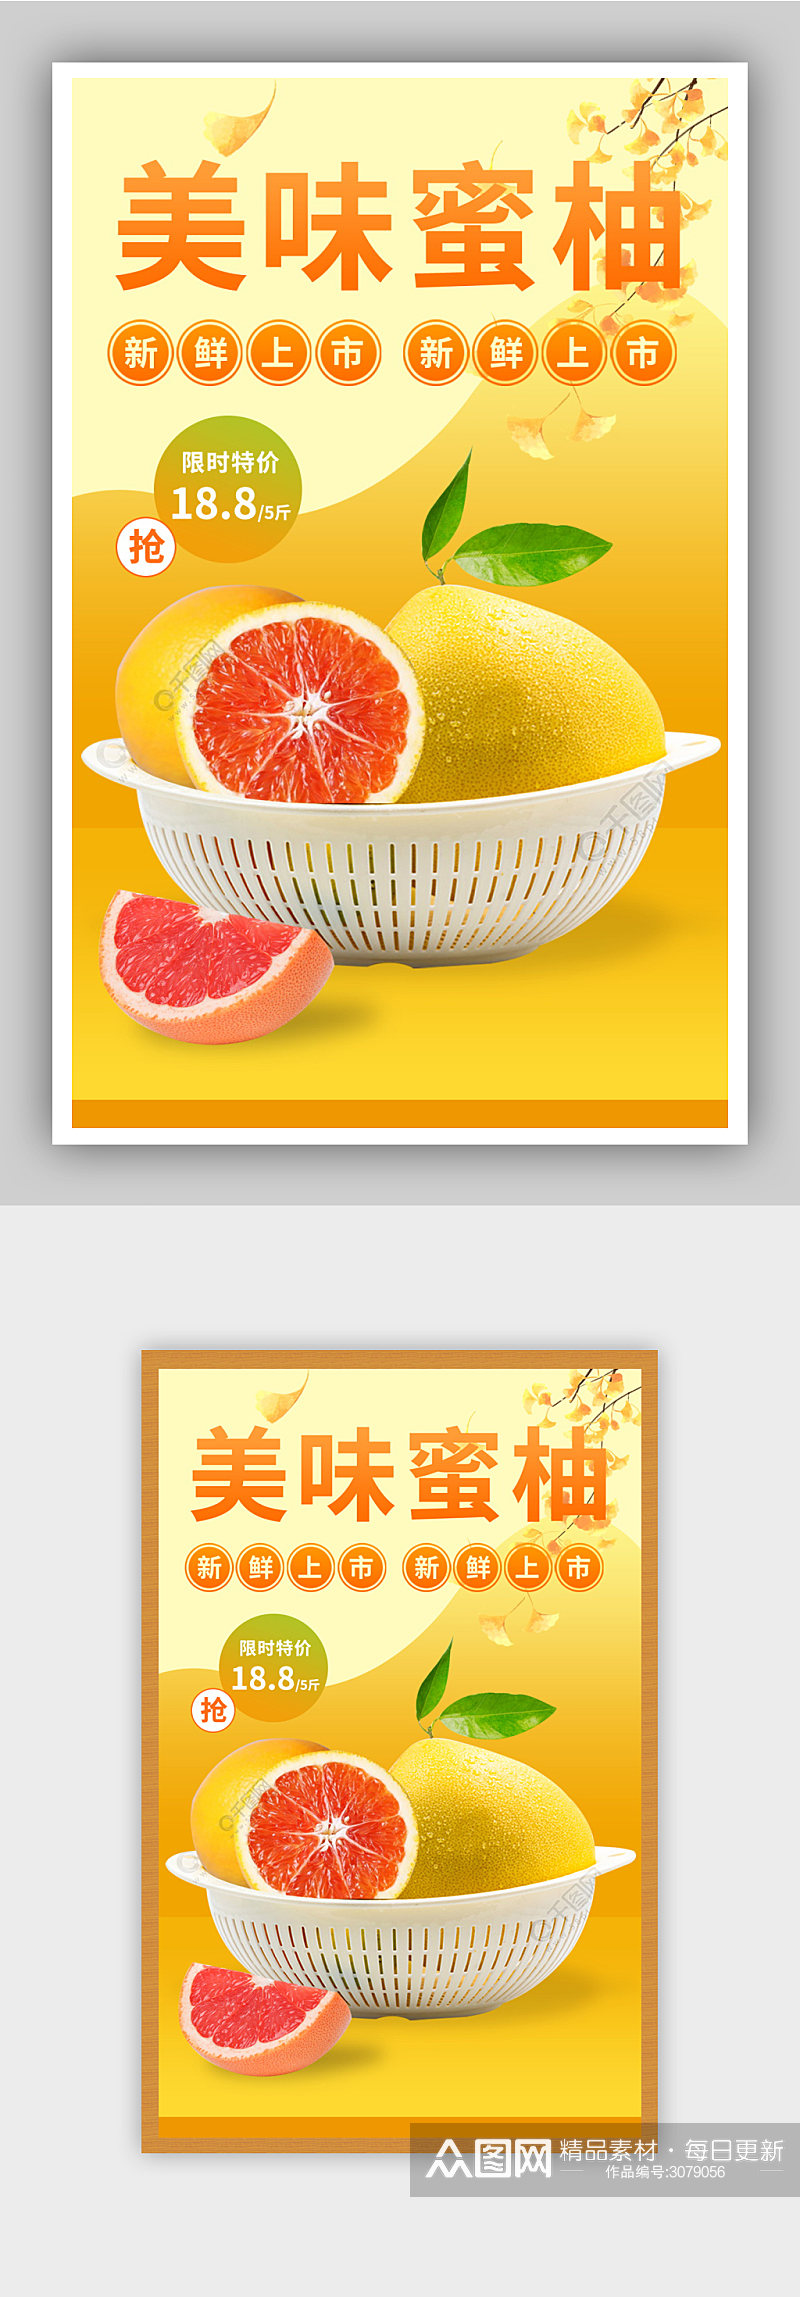 柚子水果促销海报素材